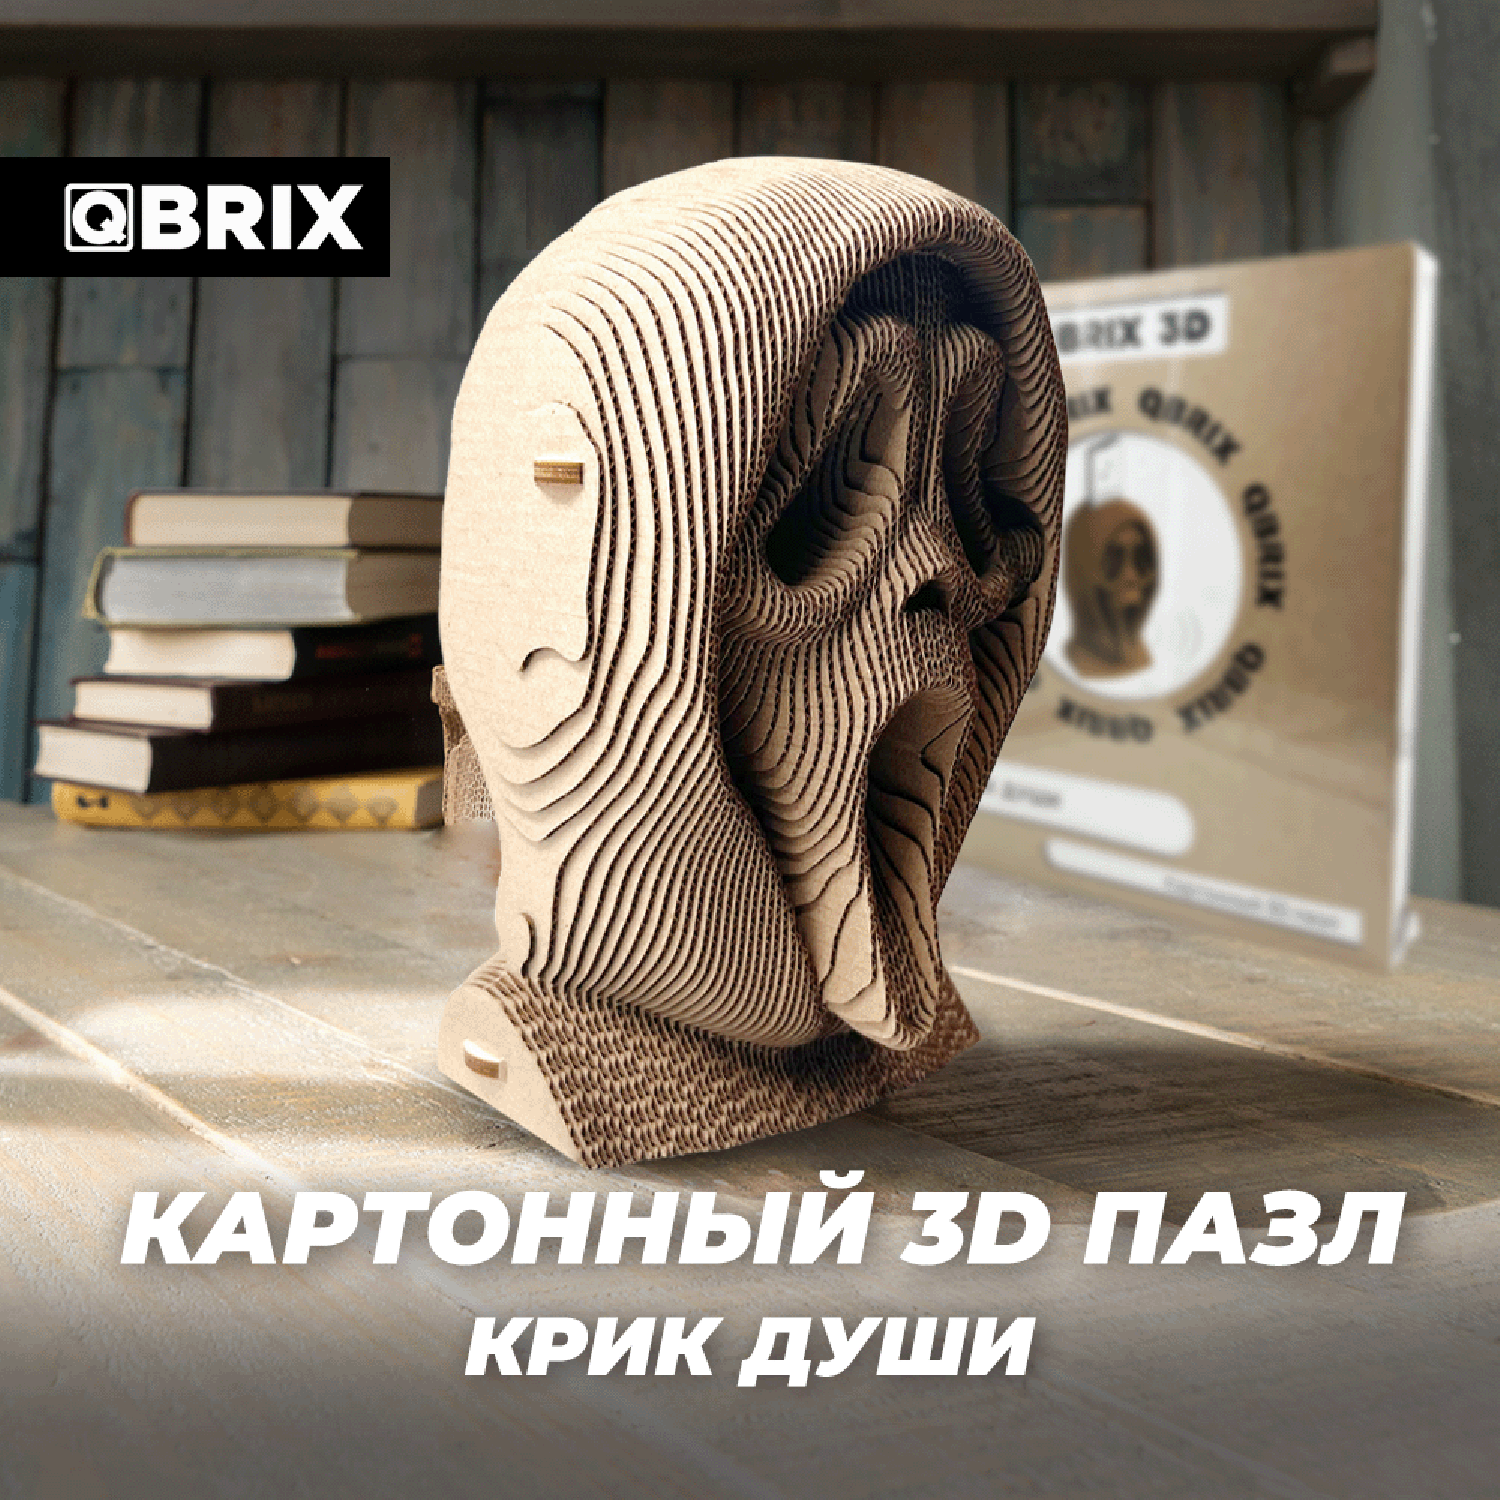 Конструктор QBRIX 3D картонный Крик души 20009 20009 - фото 9